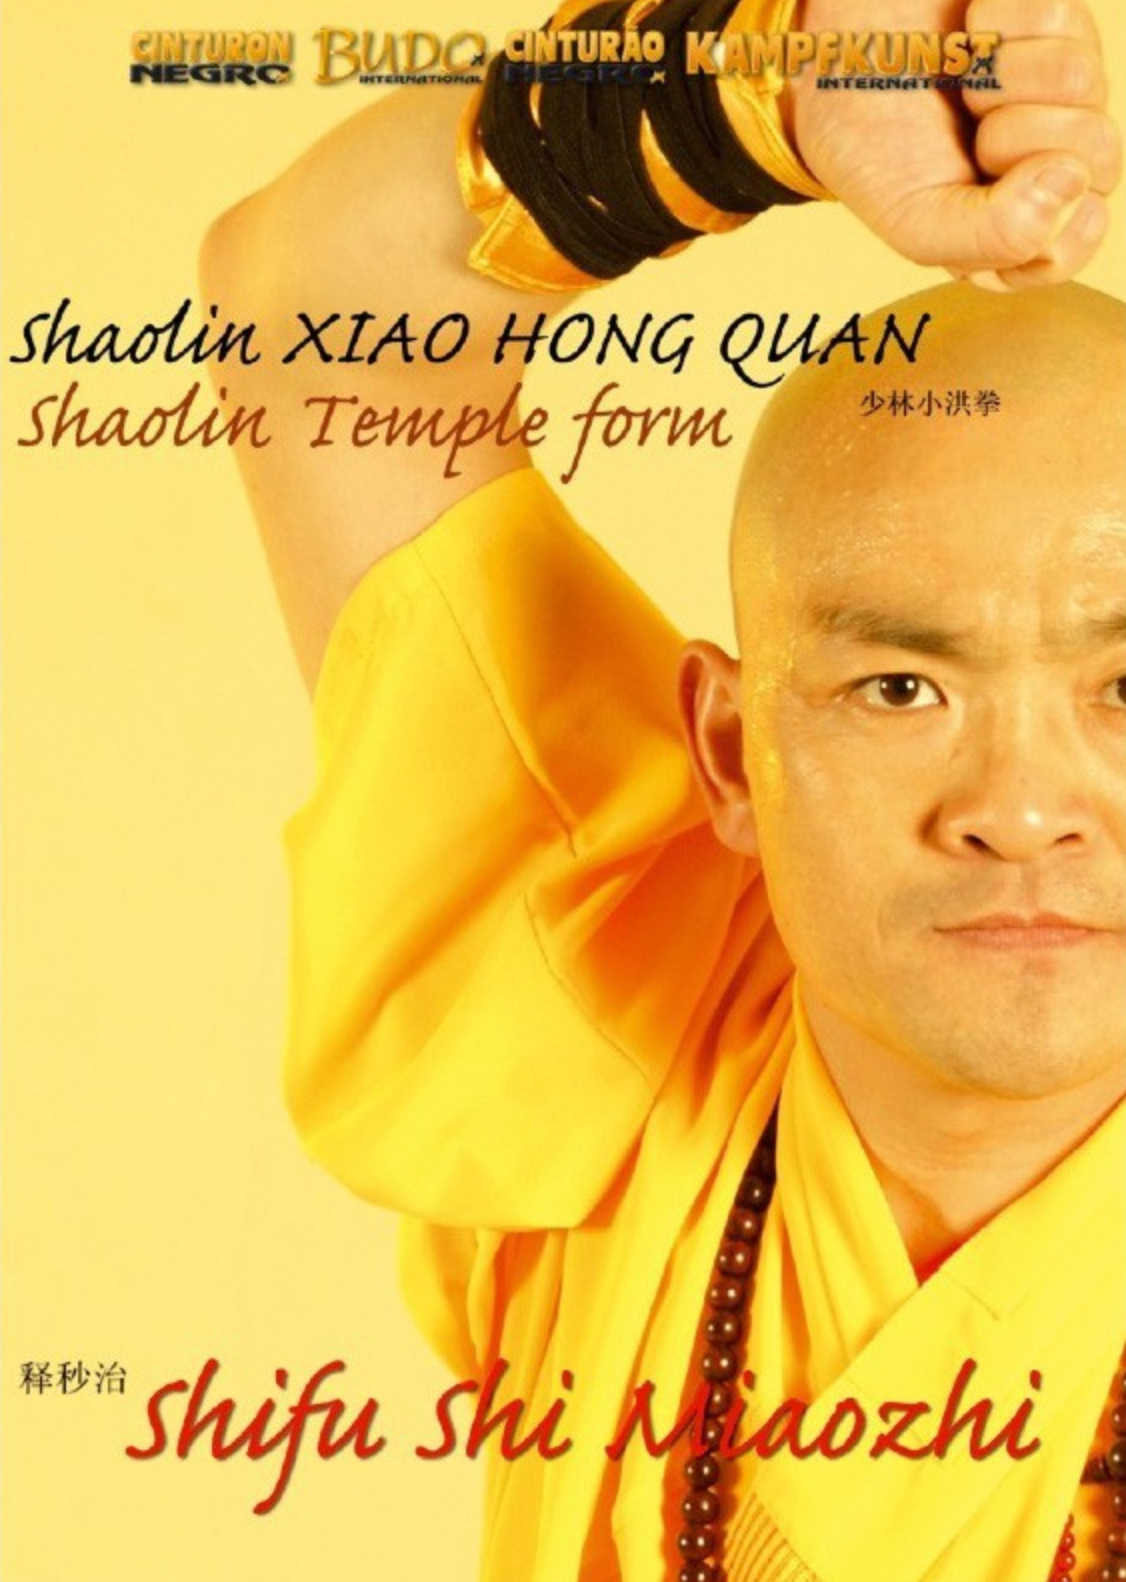 Shaolin Xiao Hong Quan Form Tao Lu DVD by Shi Miaozhi - Budovideos Inc